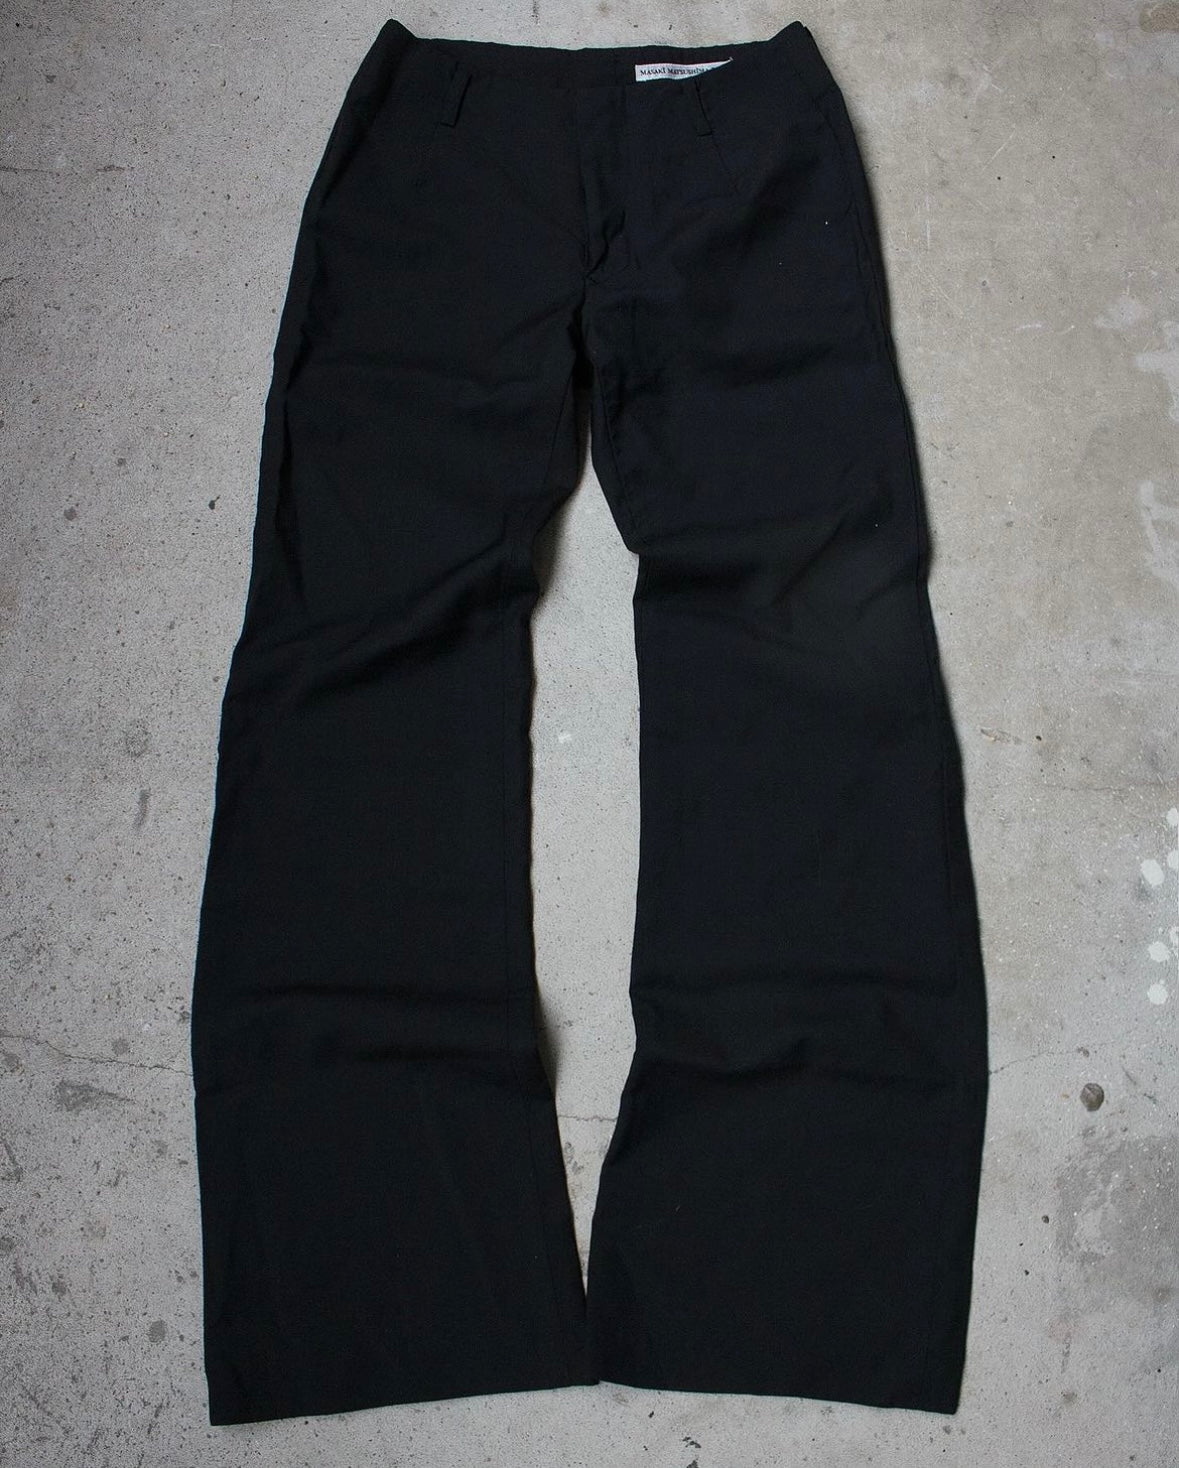 Masaki Matsushima 90s flare bootcut trouser